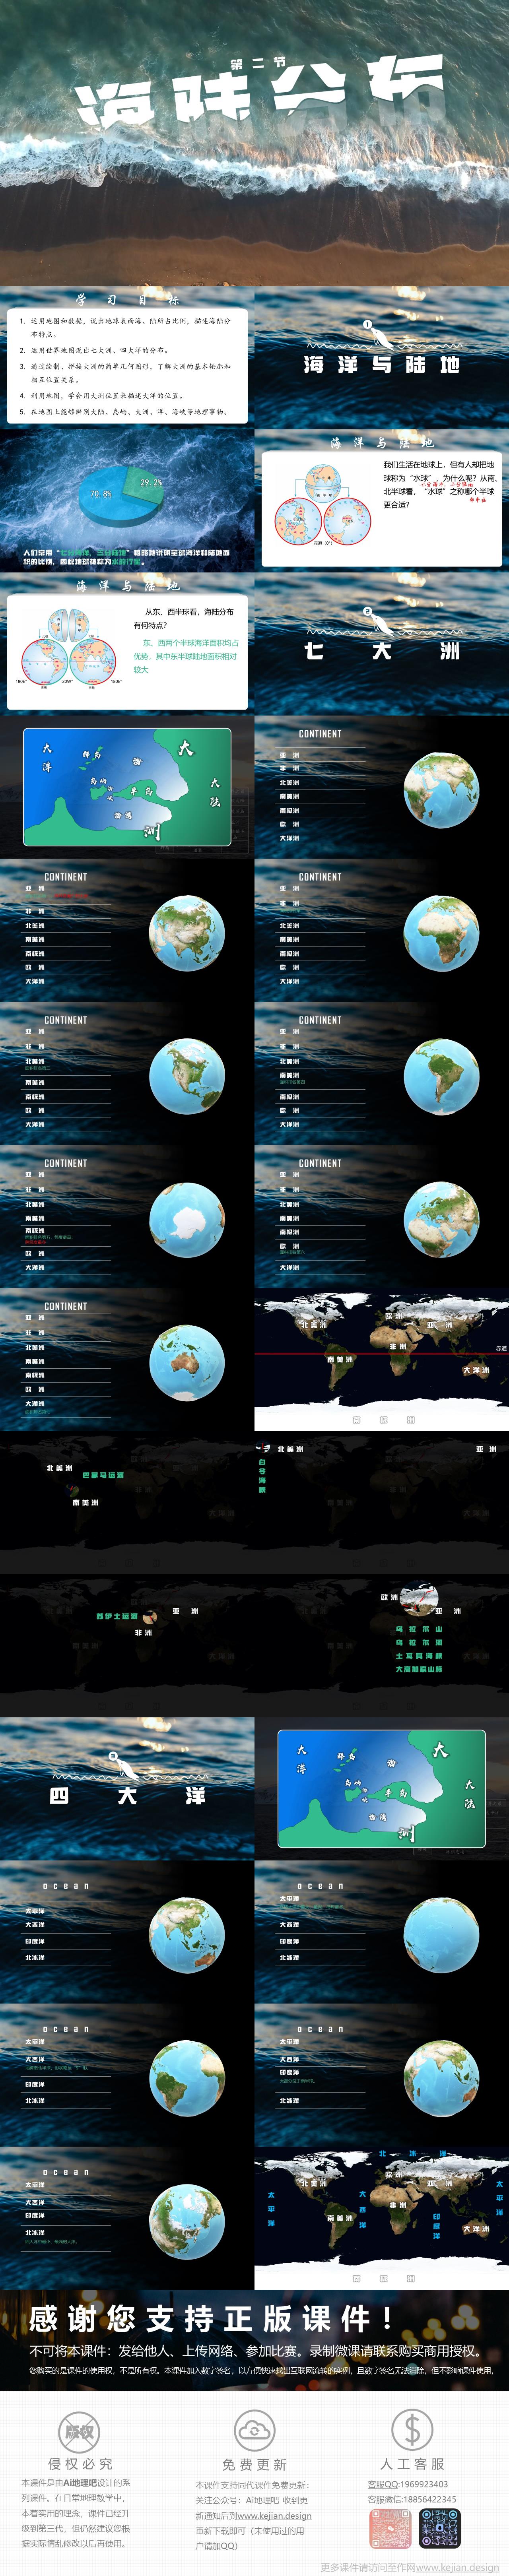 世界的海陆分布_1.jpg